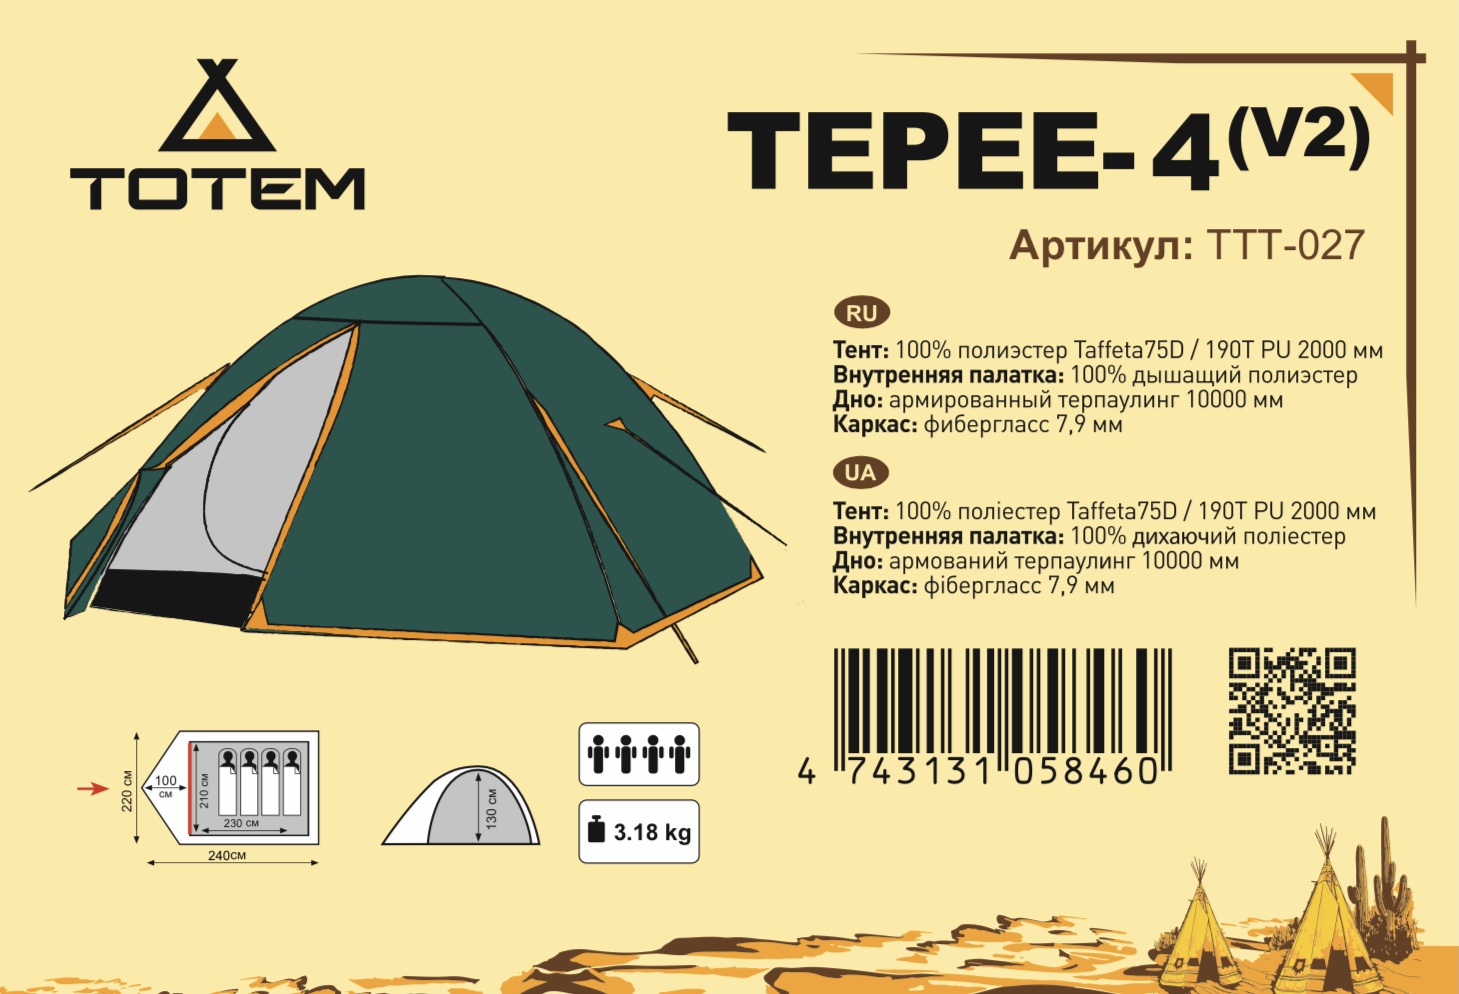 Палатка Totem Tepee 4 (V2) купить в Минске. Фото �3